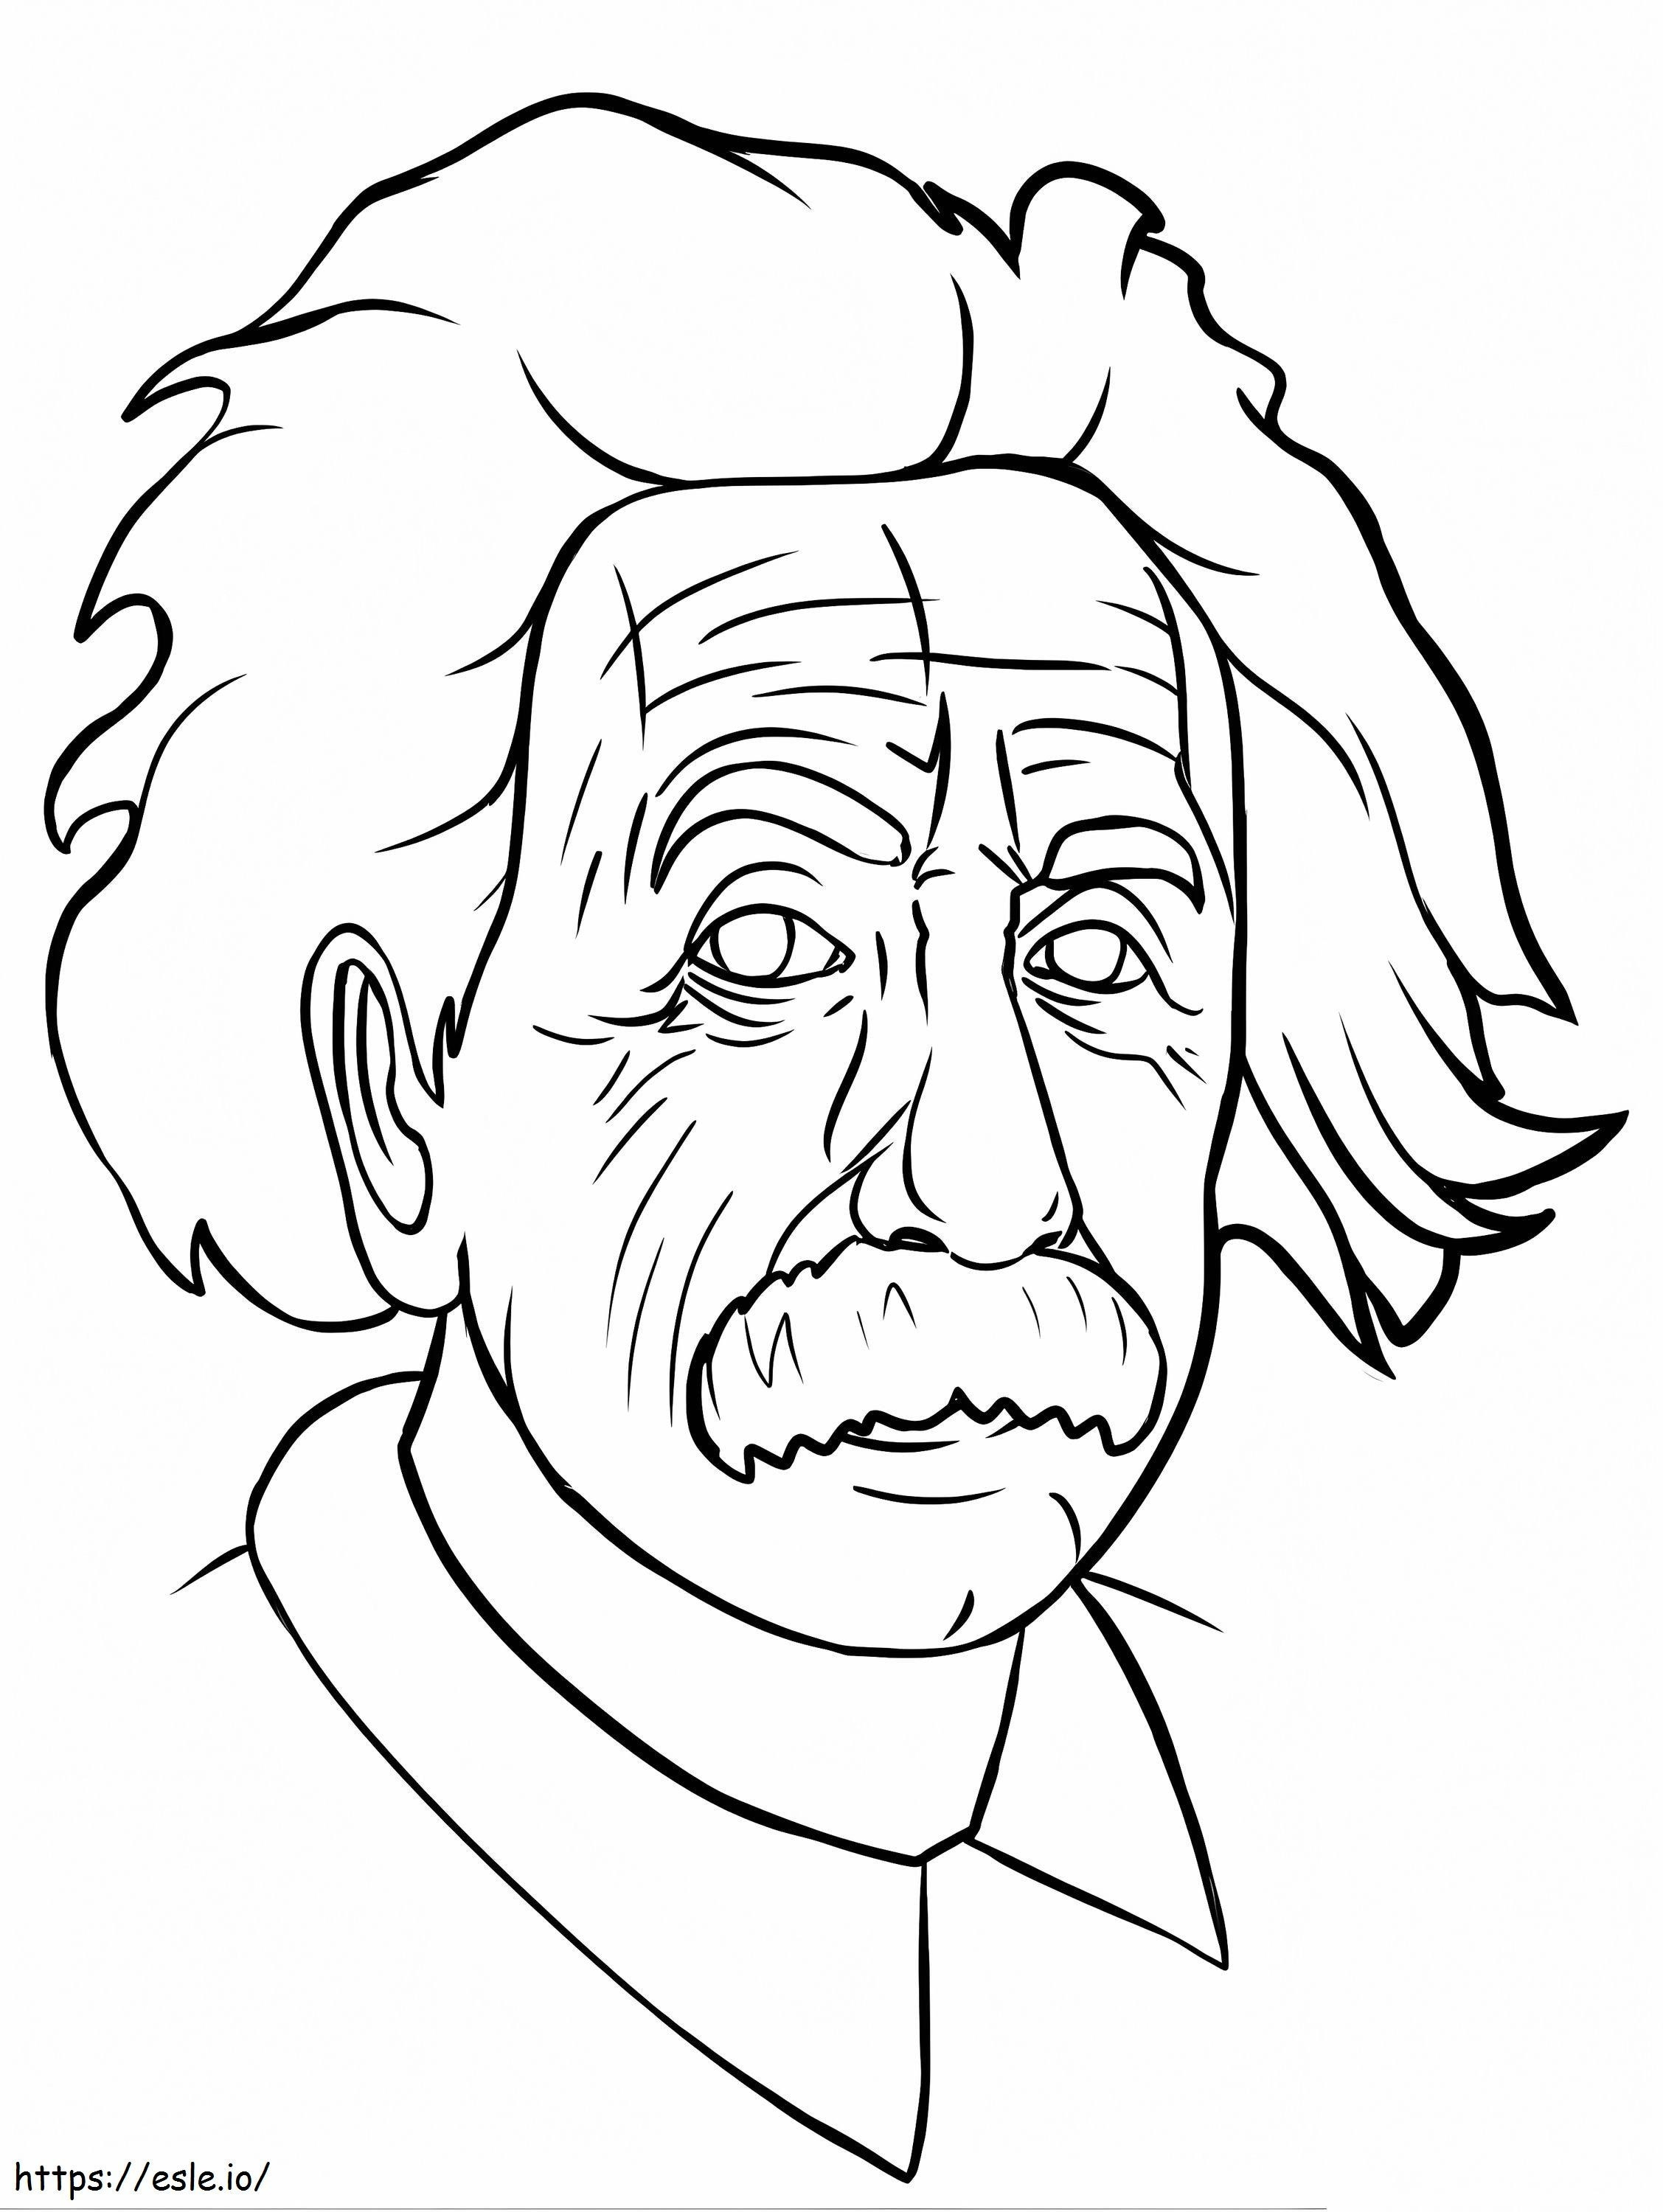 Cara de Einstein para colorear